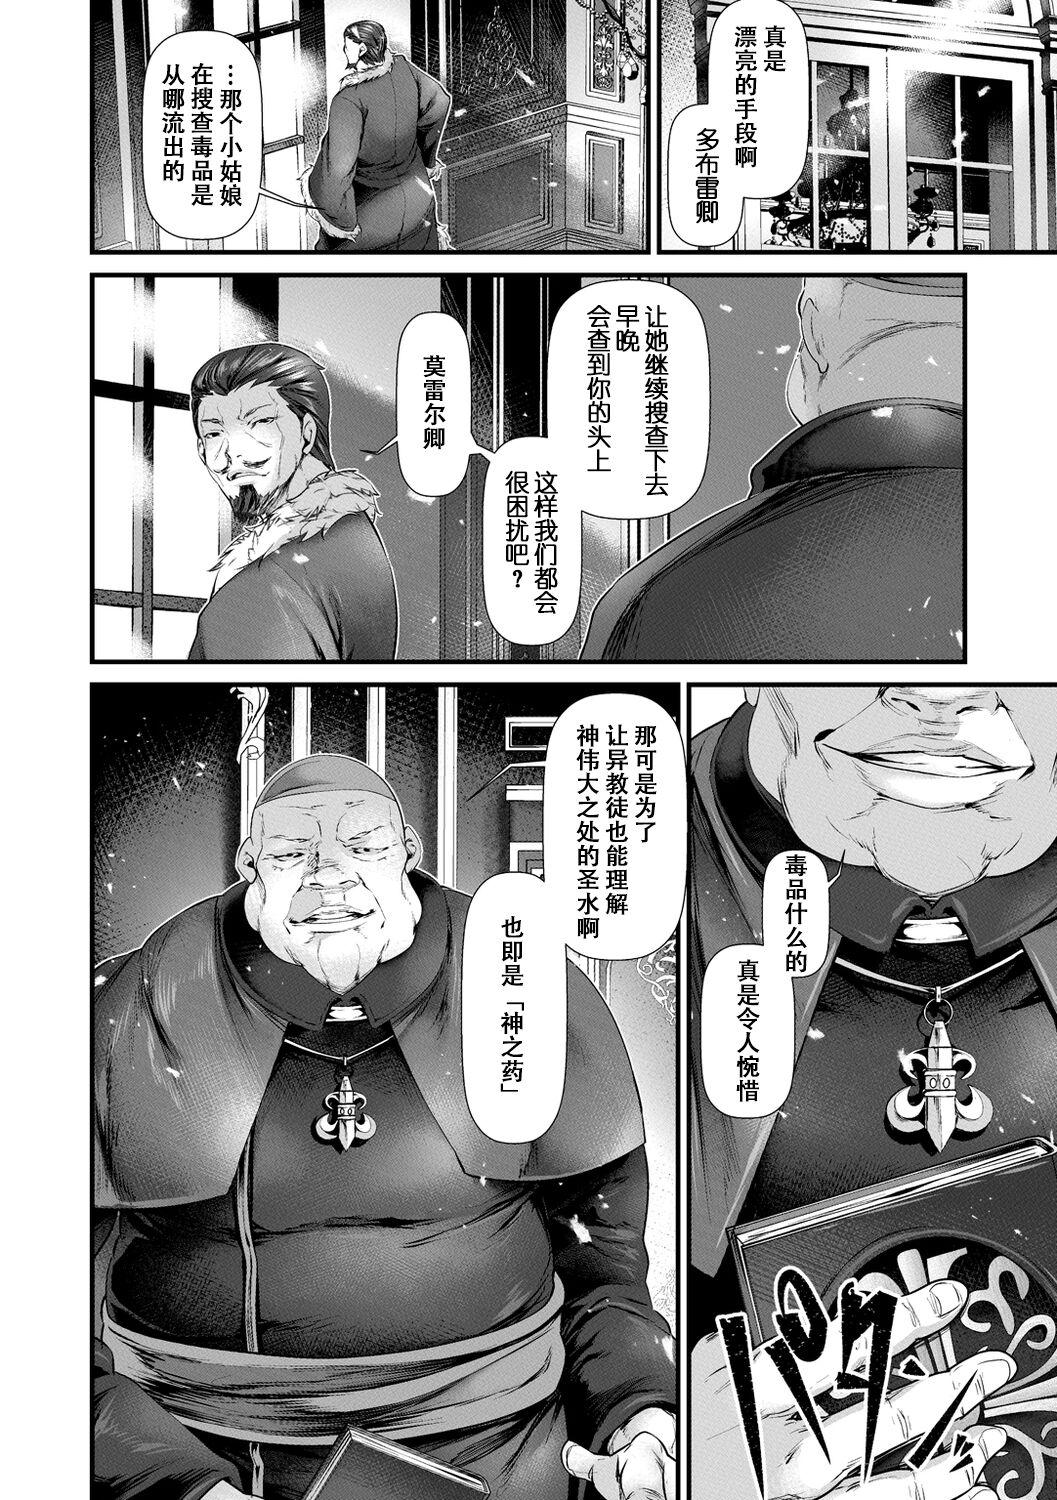 Gostosas Keikyoku Souri Fisting - Page 4